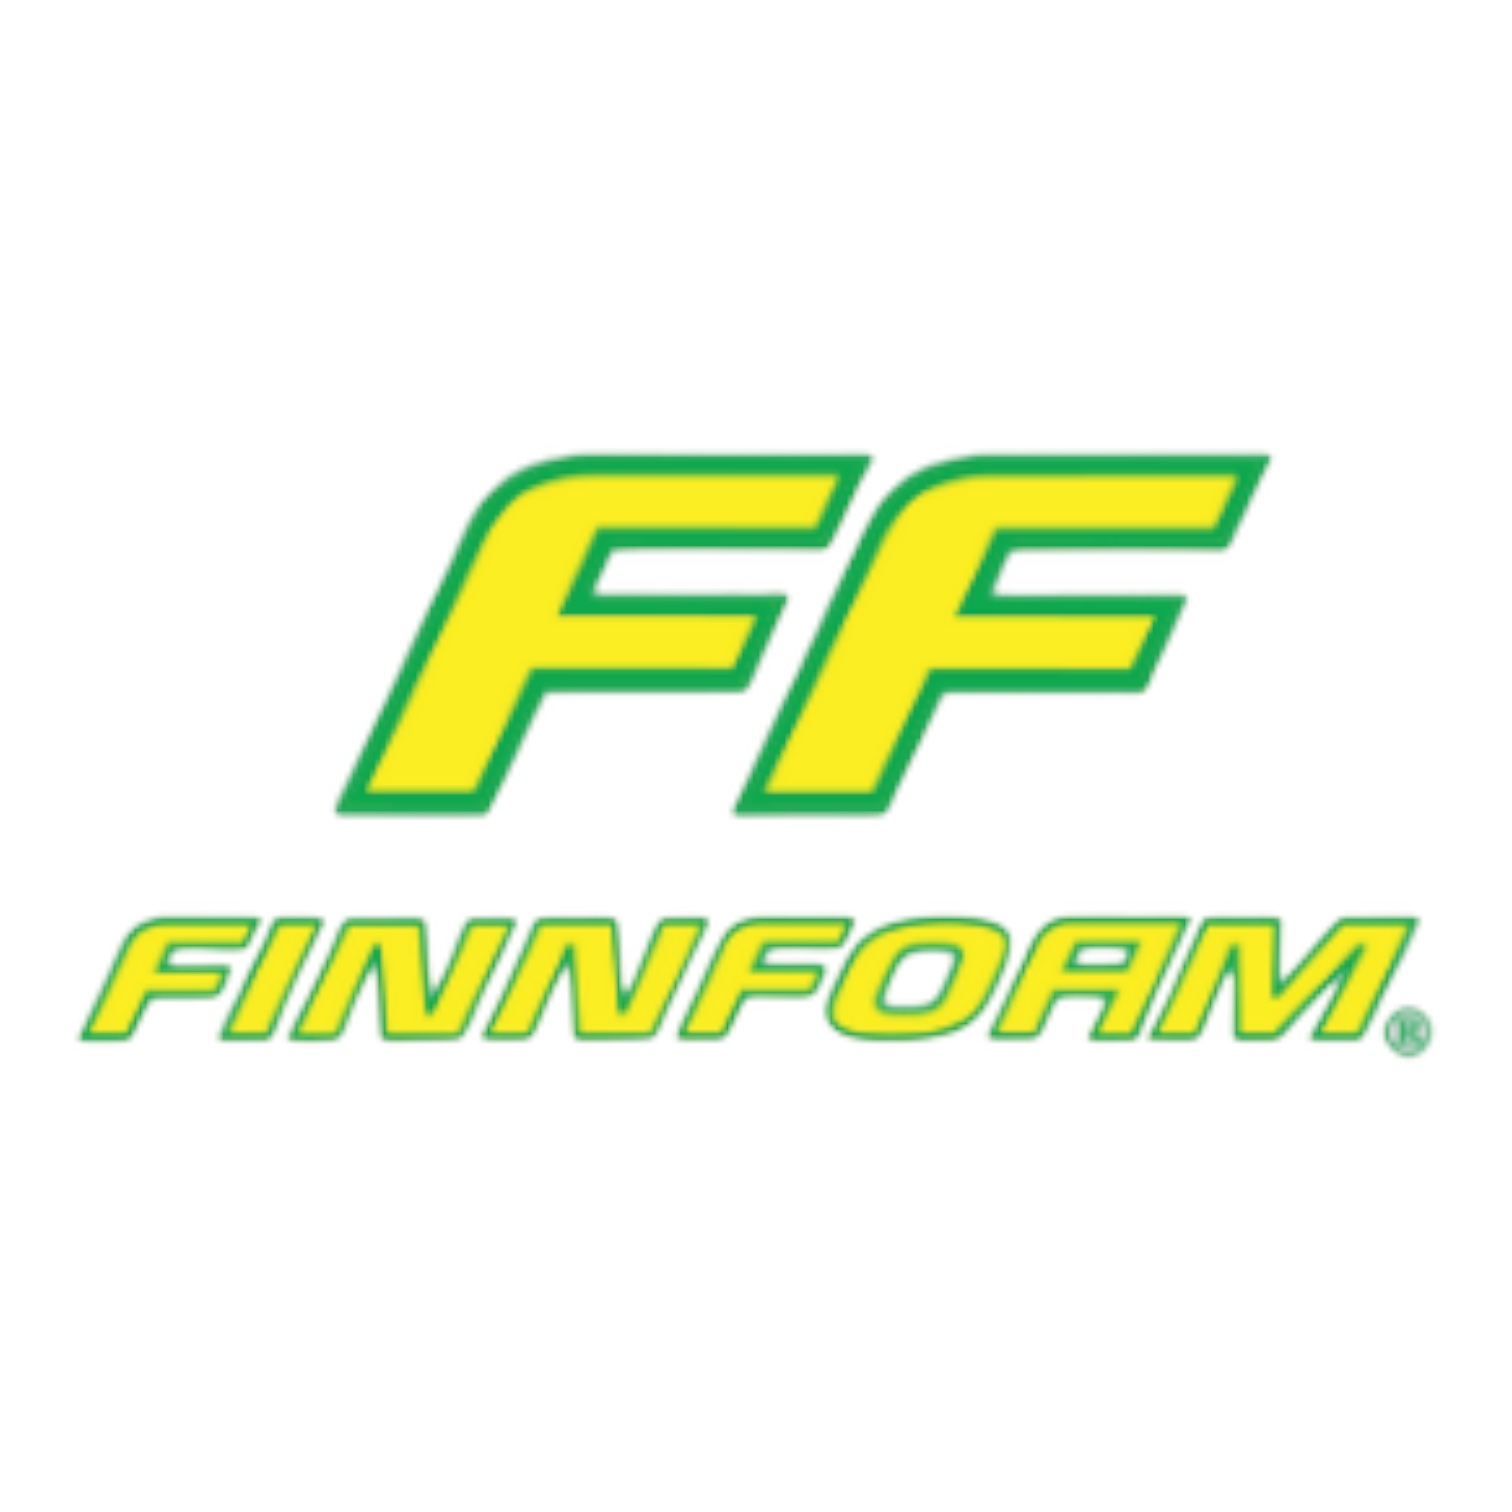 FinnFoam